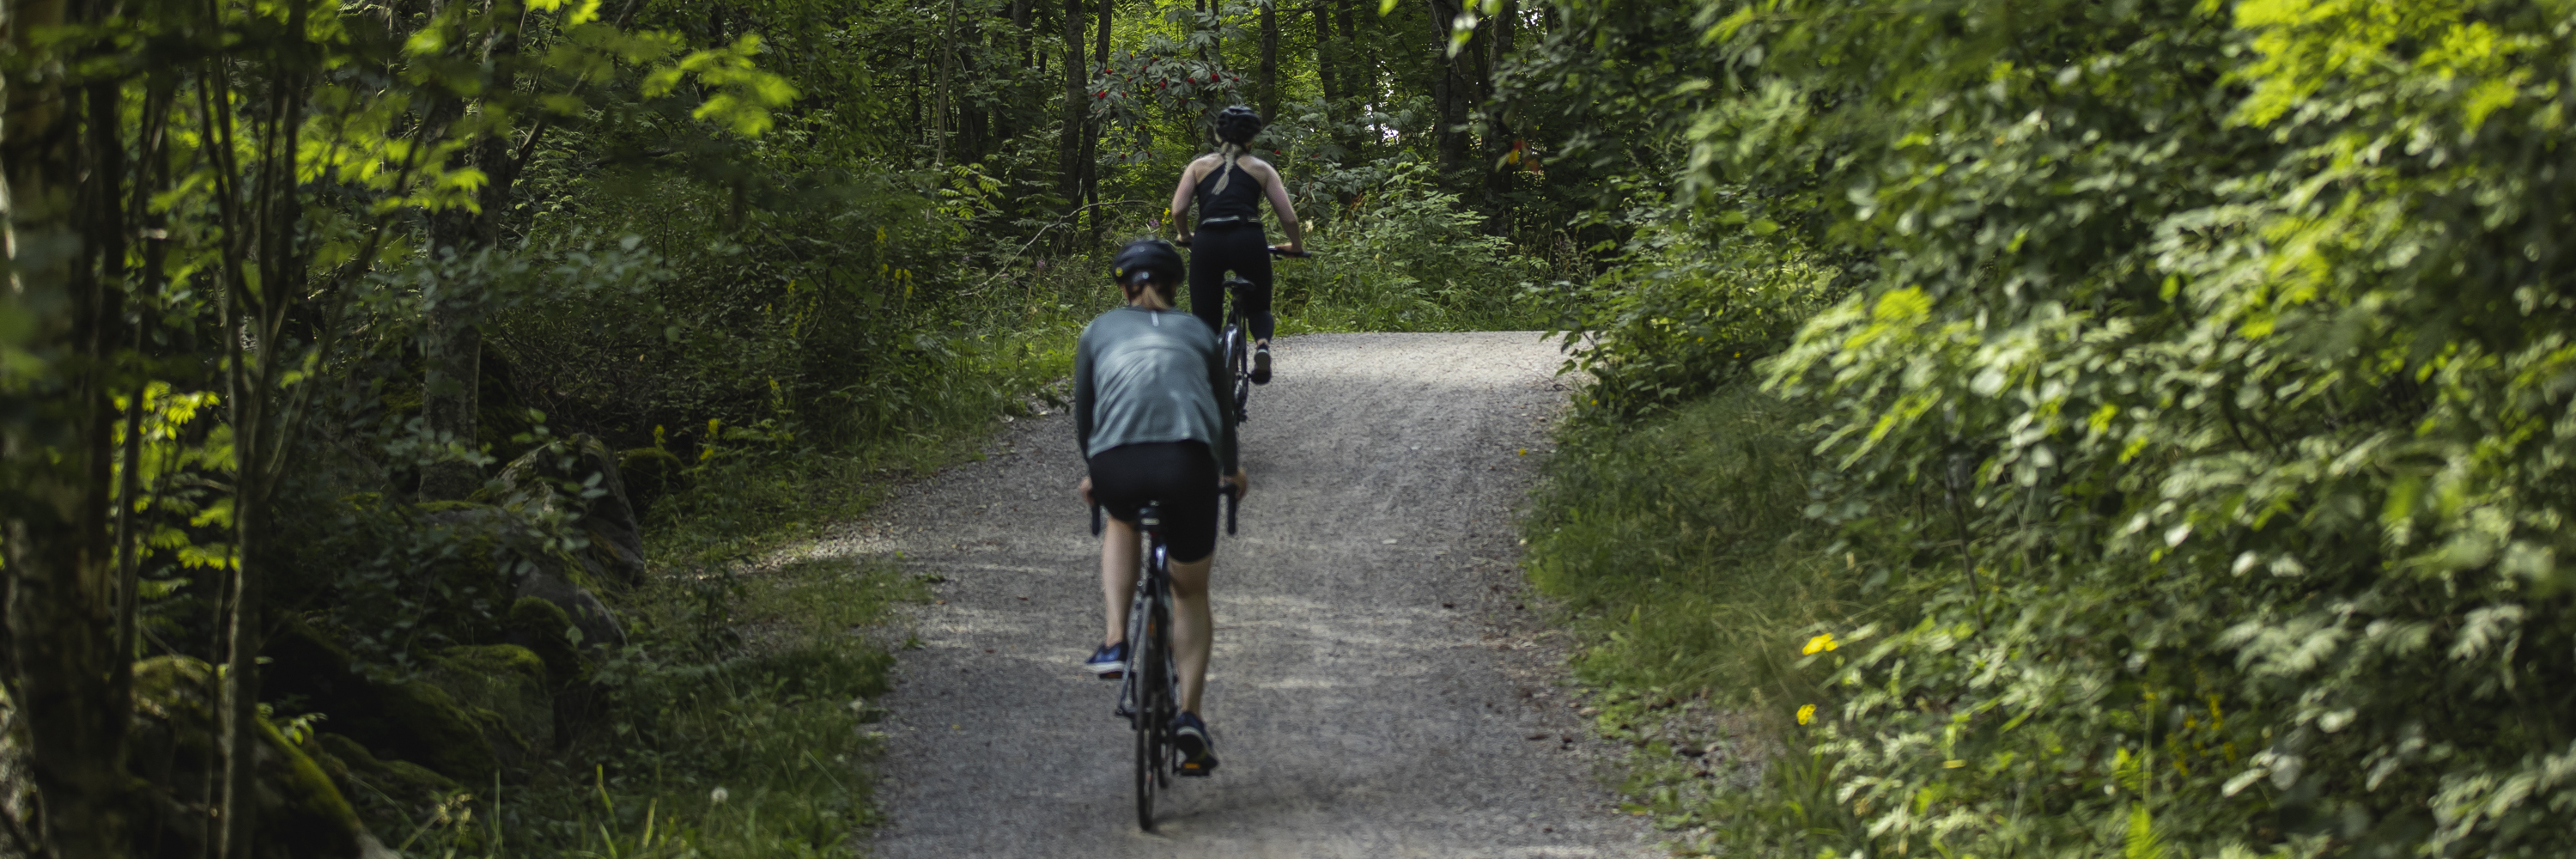 Två cyklister på en grusväg i en skog.